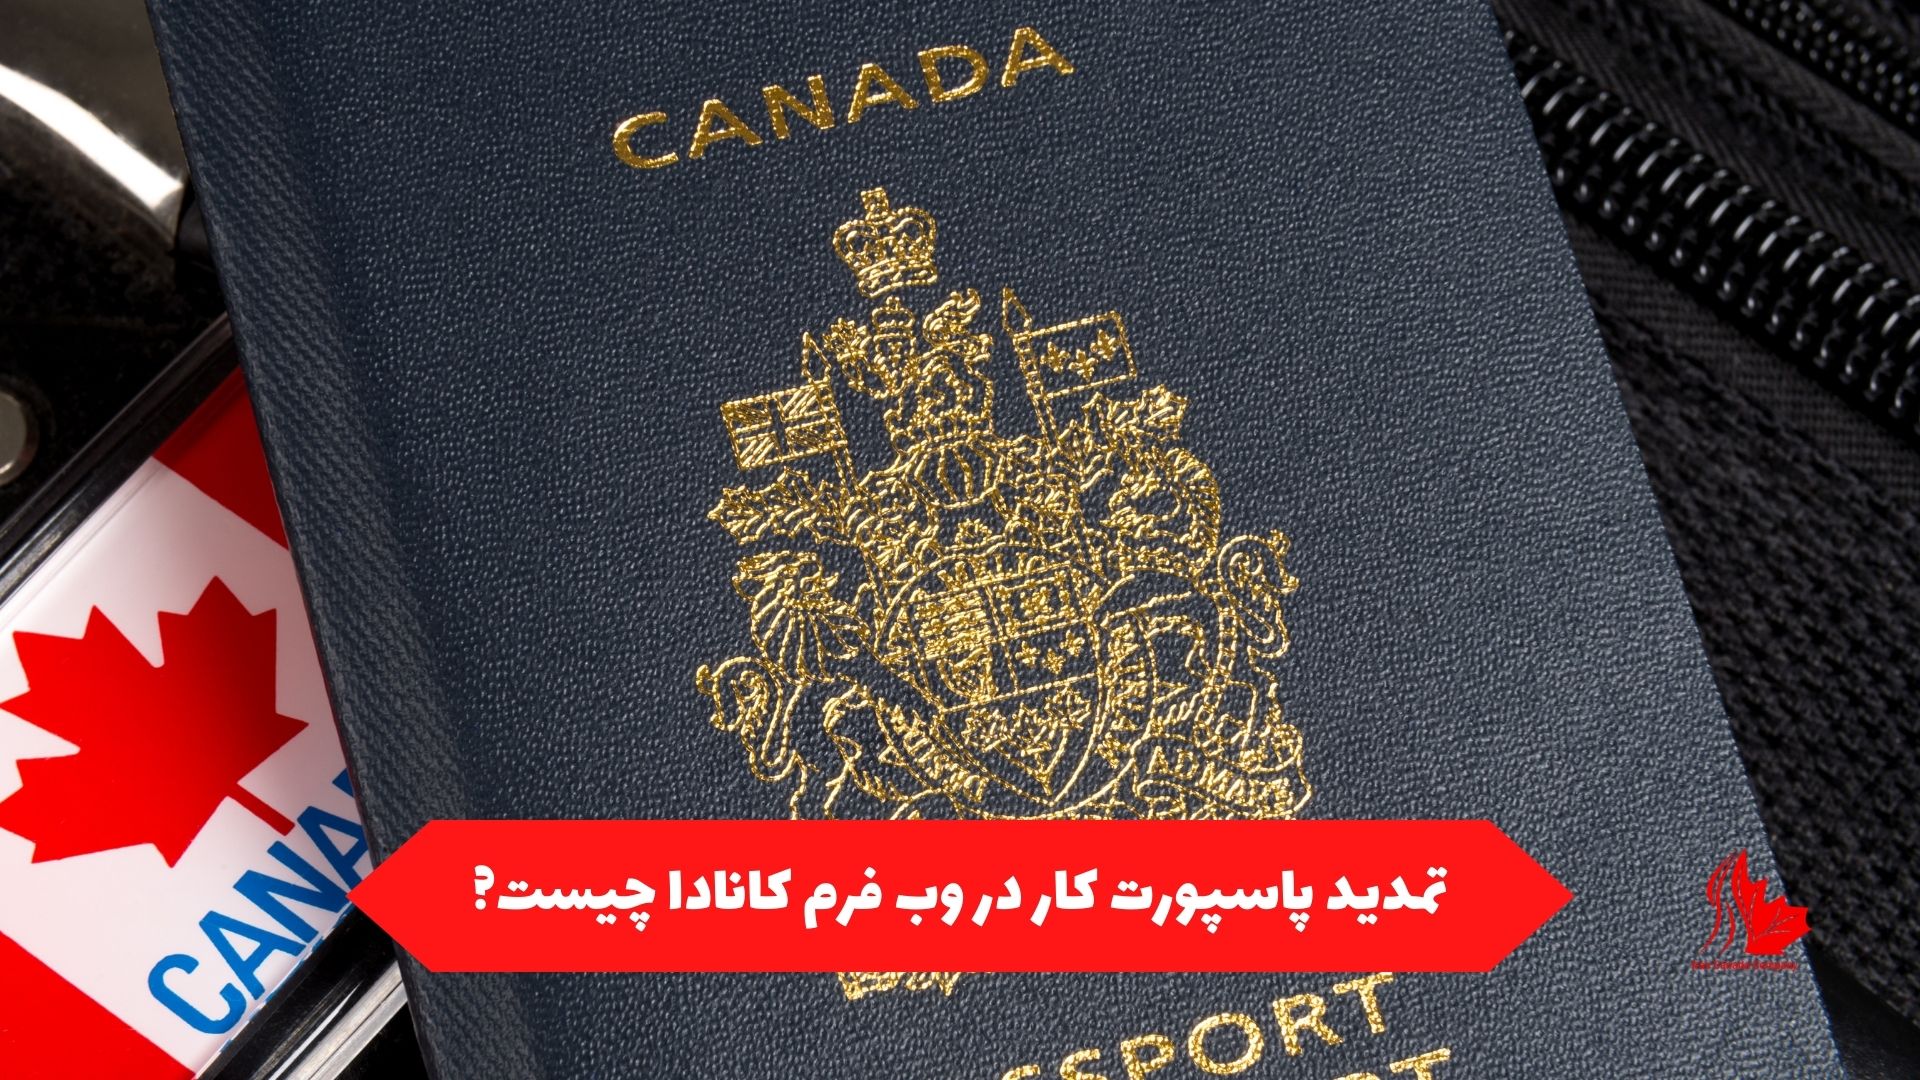 تمدید پاسپورت کار در وب فرم کانادا چیست